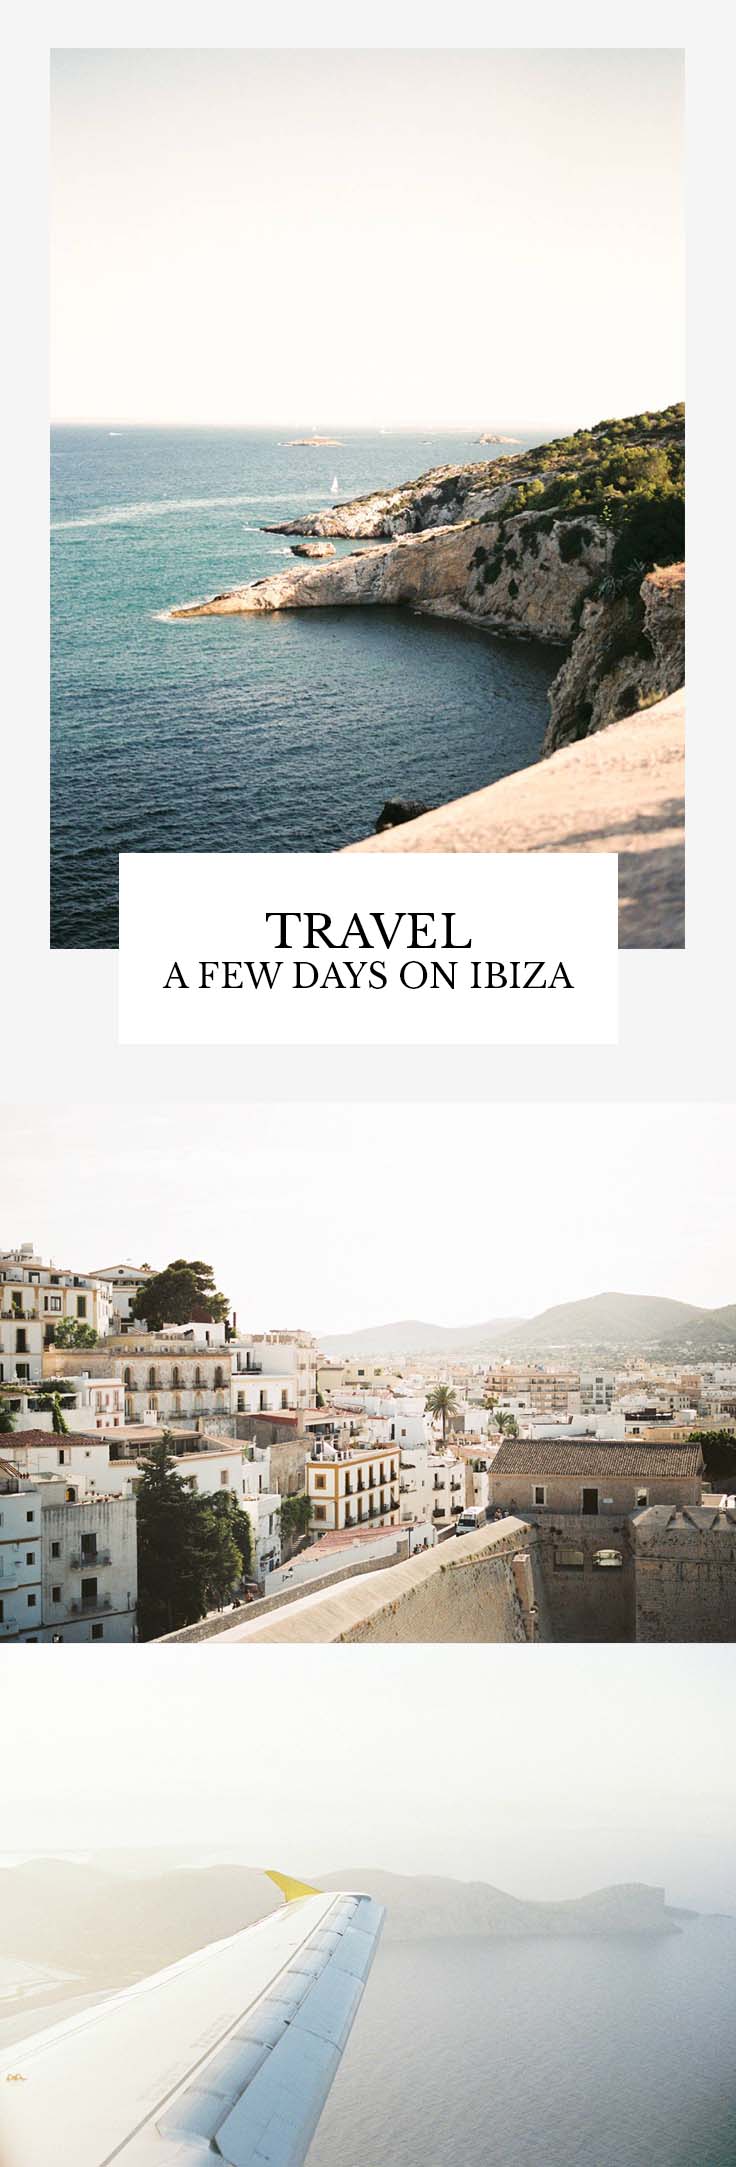 Travel - A few days on Ibiza